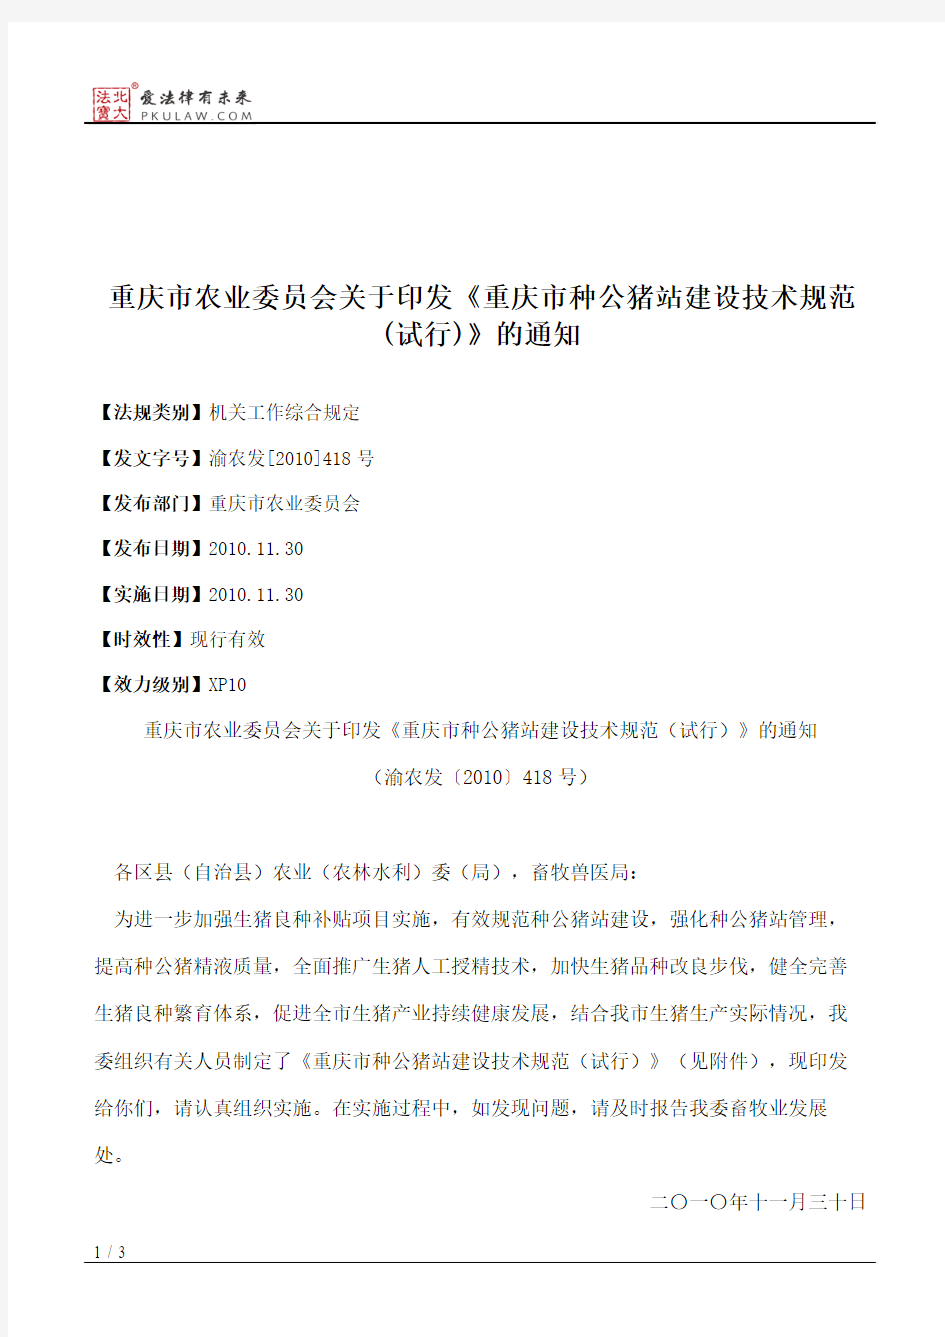 重庆市农业委员会关于印发《重庆市种公猪站建设技术规范(试行)》的通知